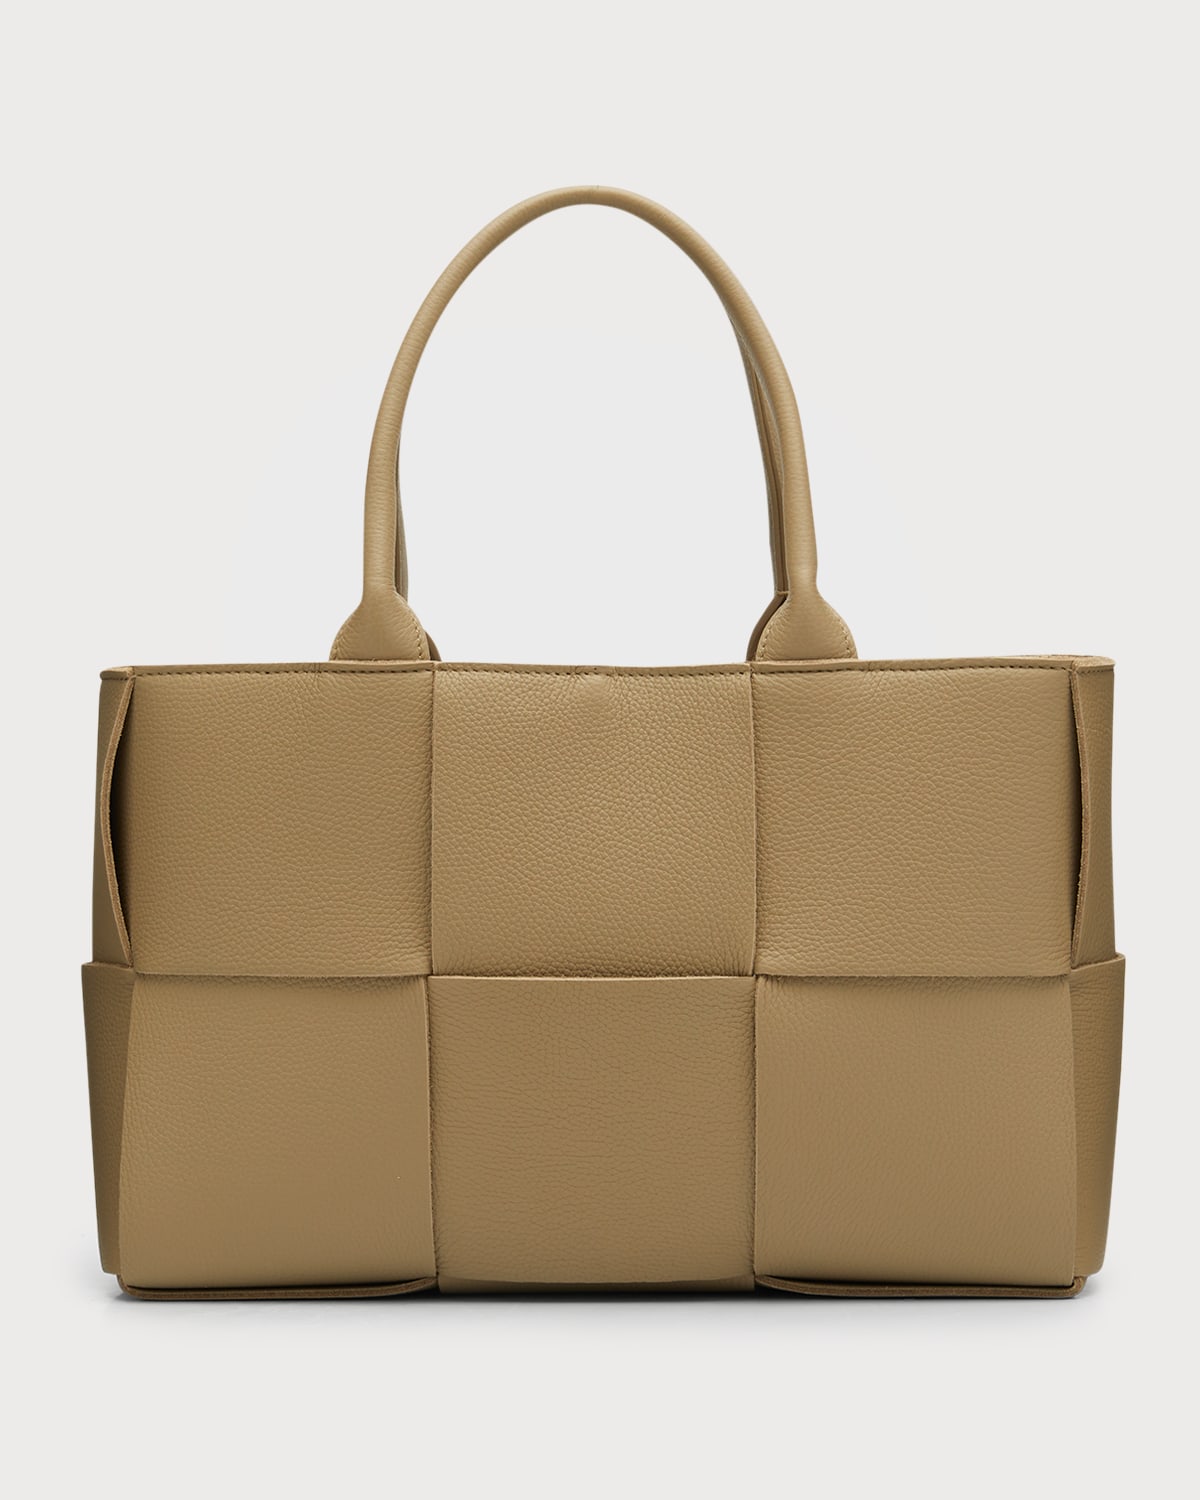 Bottega Veneta Tote Bag | Neiman Marcus